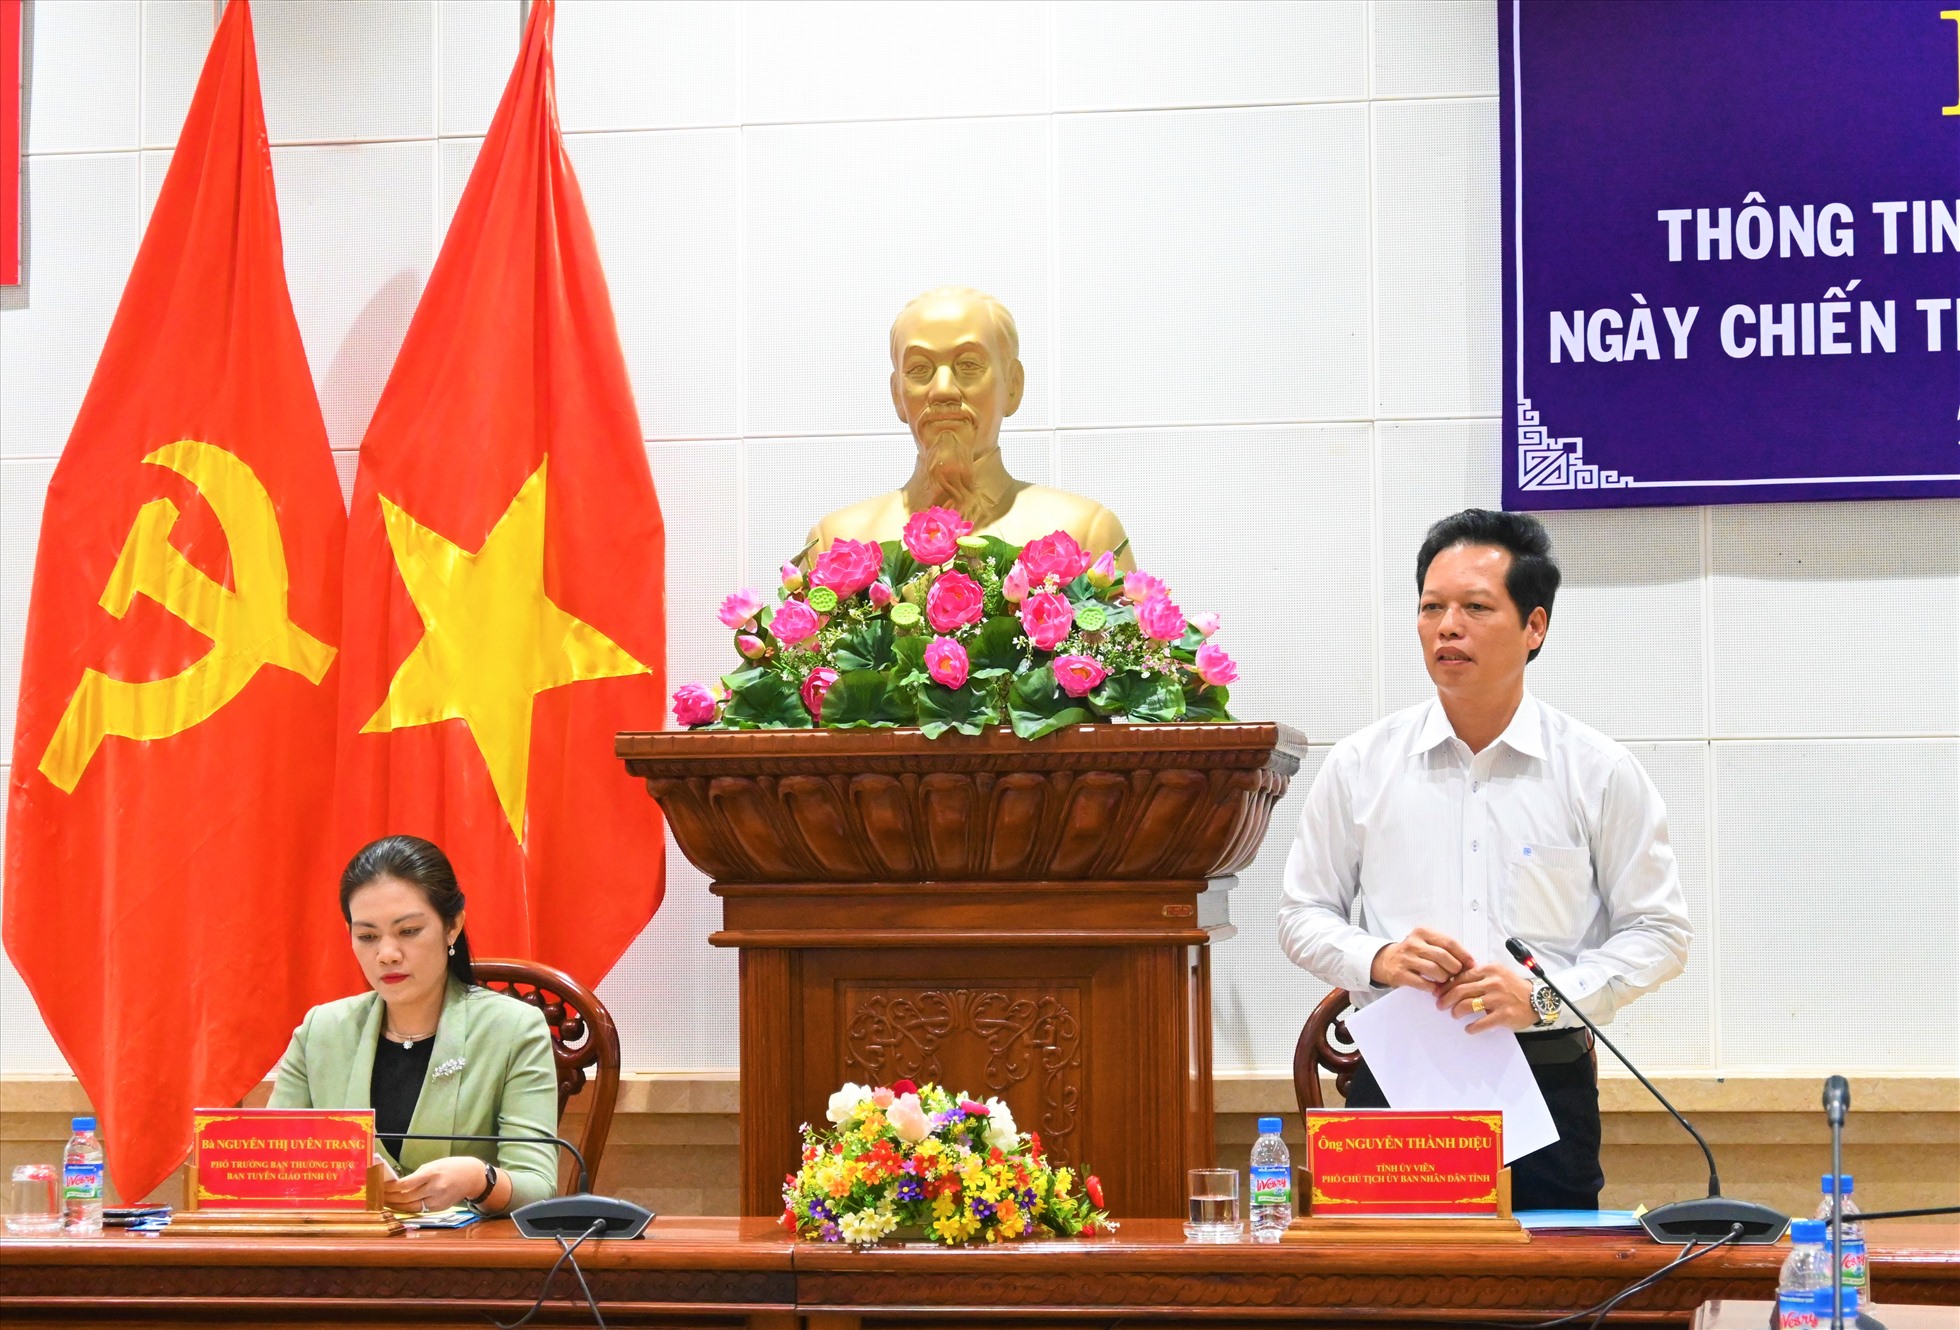 ông Nguyễn Thành Diệu, Phó Chủ tịch UBND tỉnh Tiền Giang (bên phải) phát biểu tại buổi họp báo. Ảnh: Thành Nhân